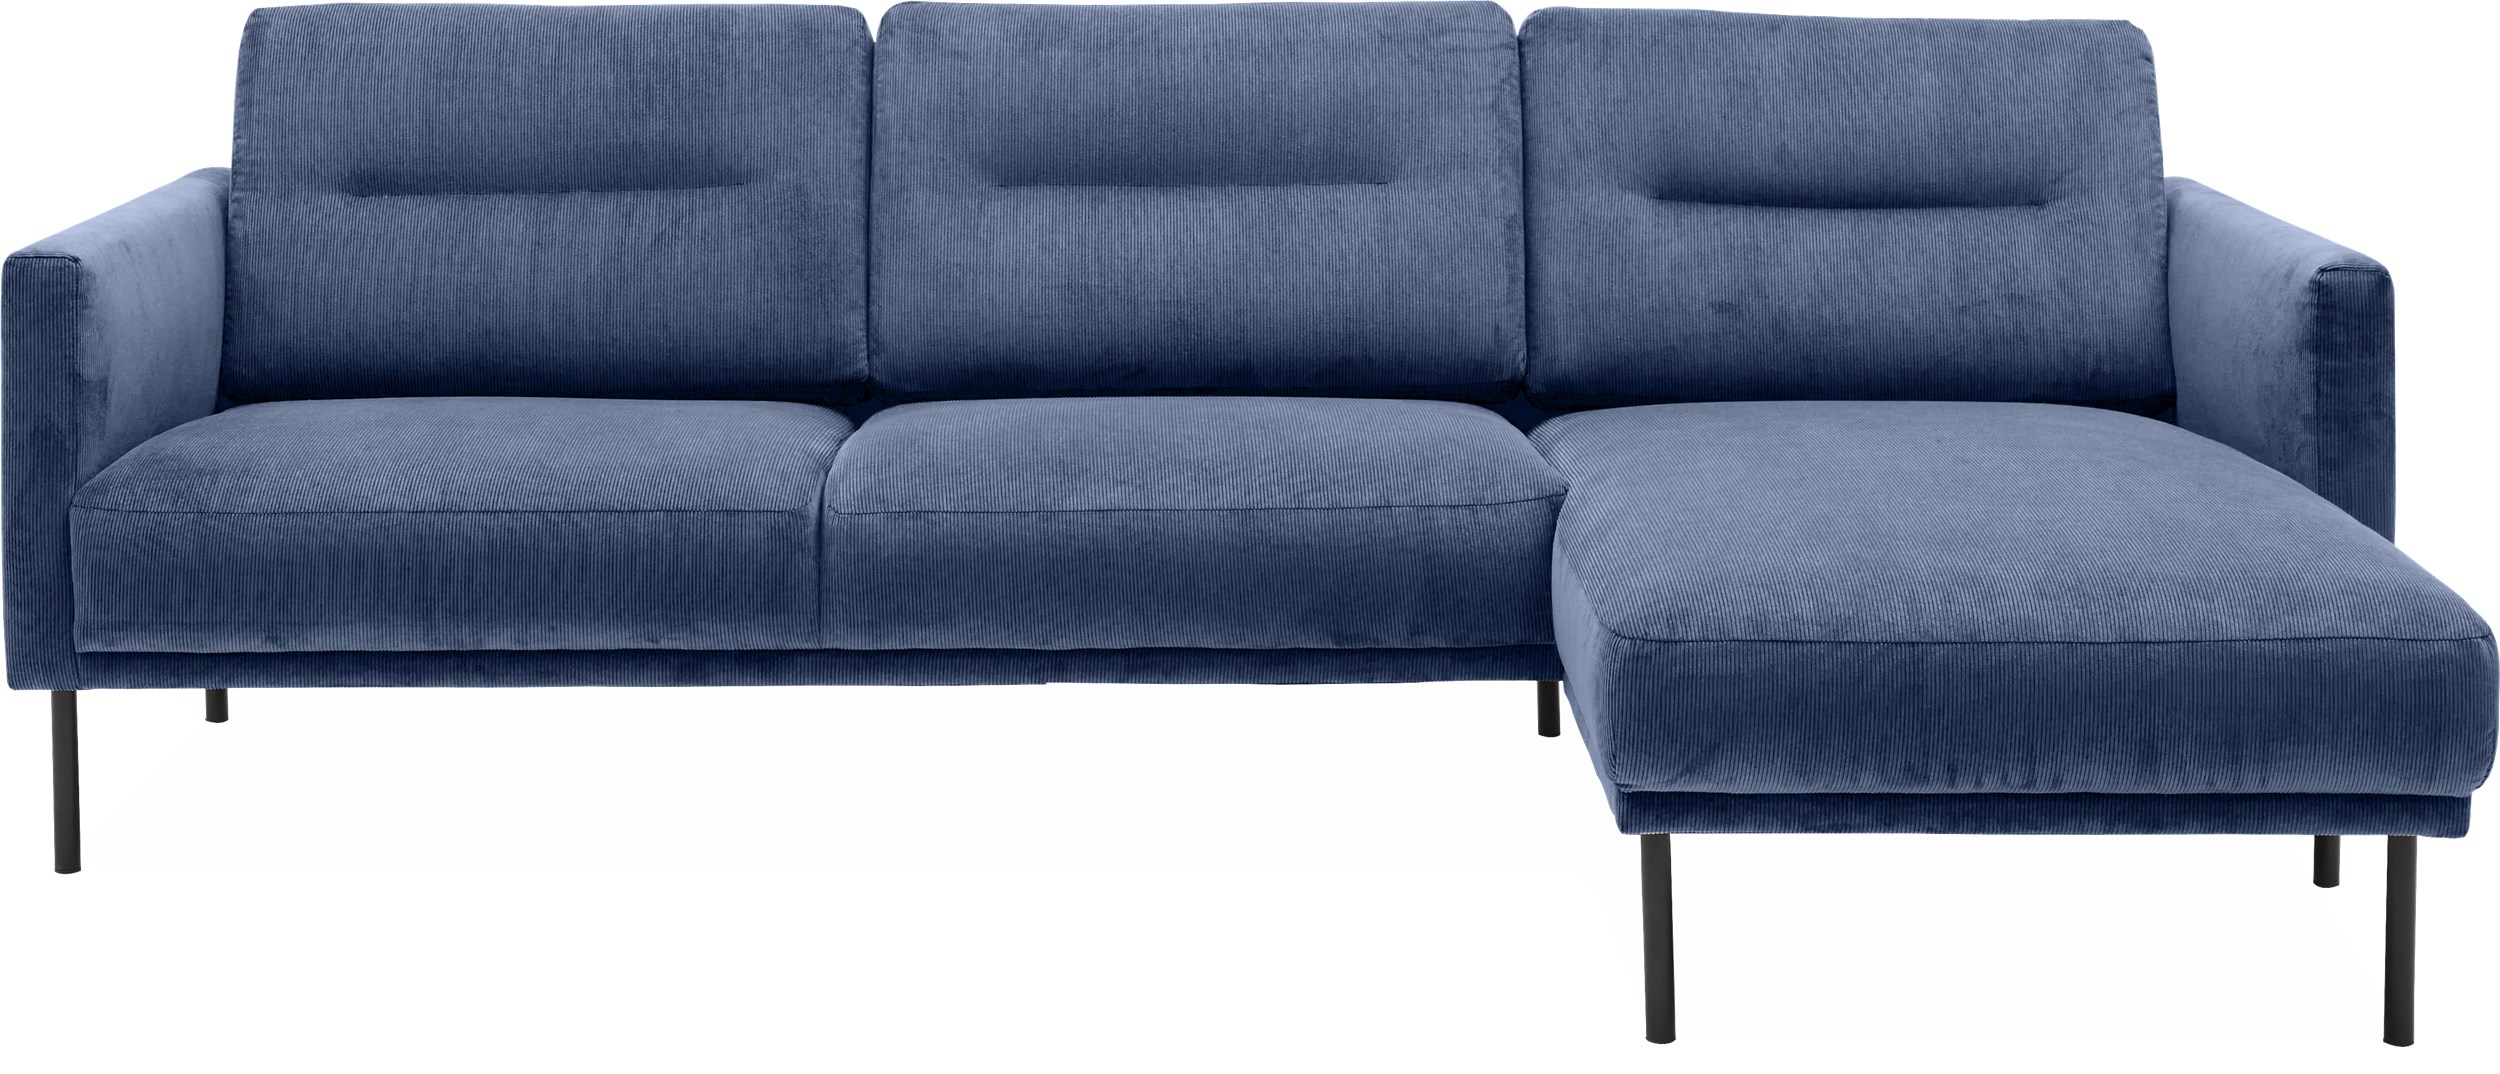 Larvik Sofa med chaiselong - Wave 220 Royal blue stof og ben i sortlakeret metal